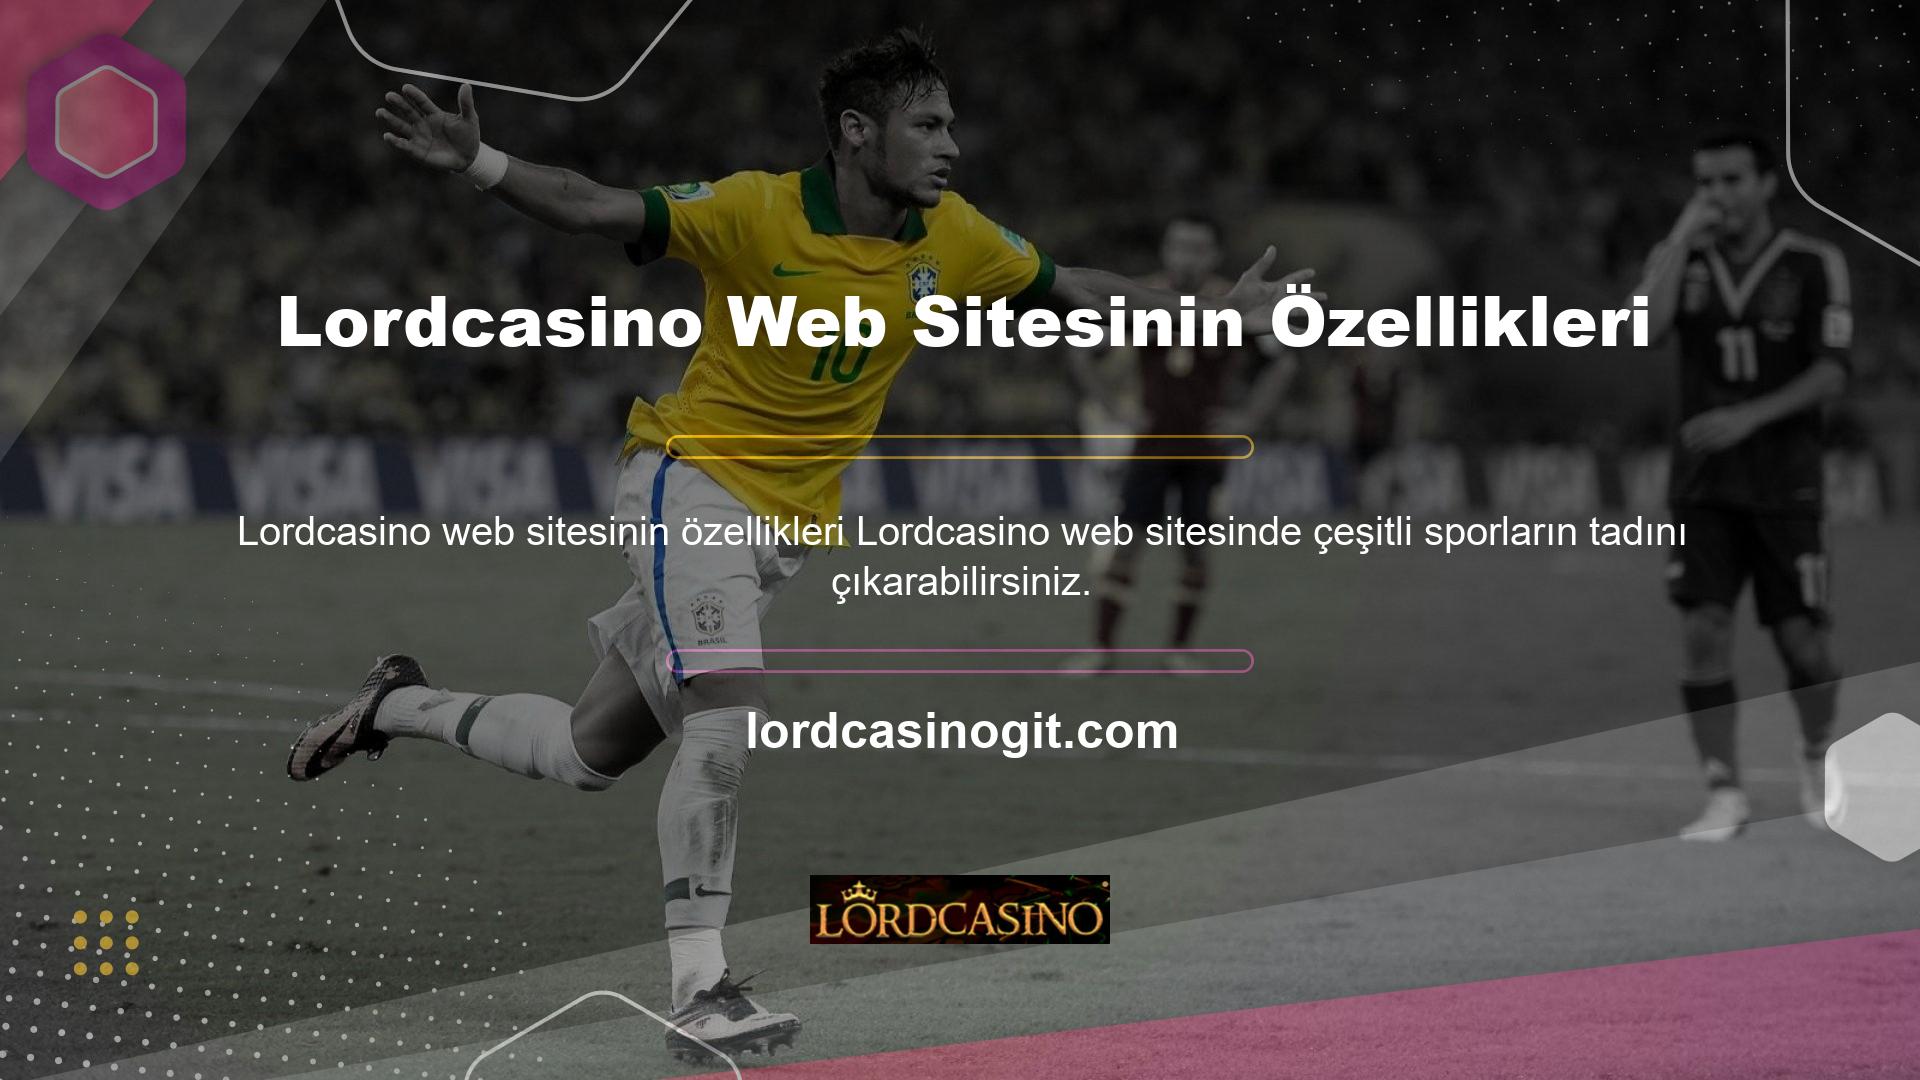 Yazının başında da belirttiğimiz gibi Lordcasino sitesi spor tahmin bölümü olan bir sitedir